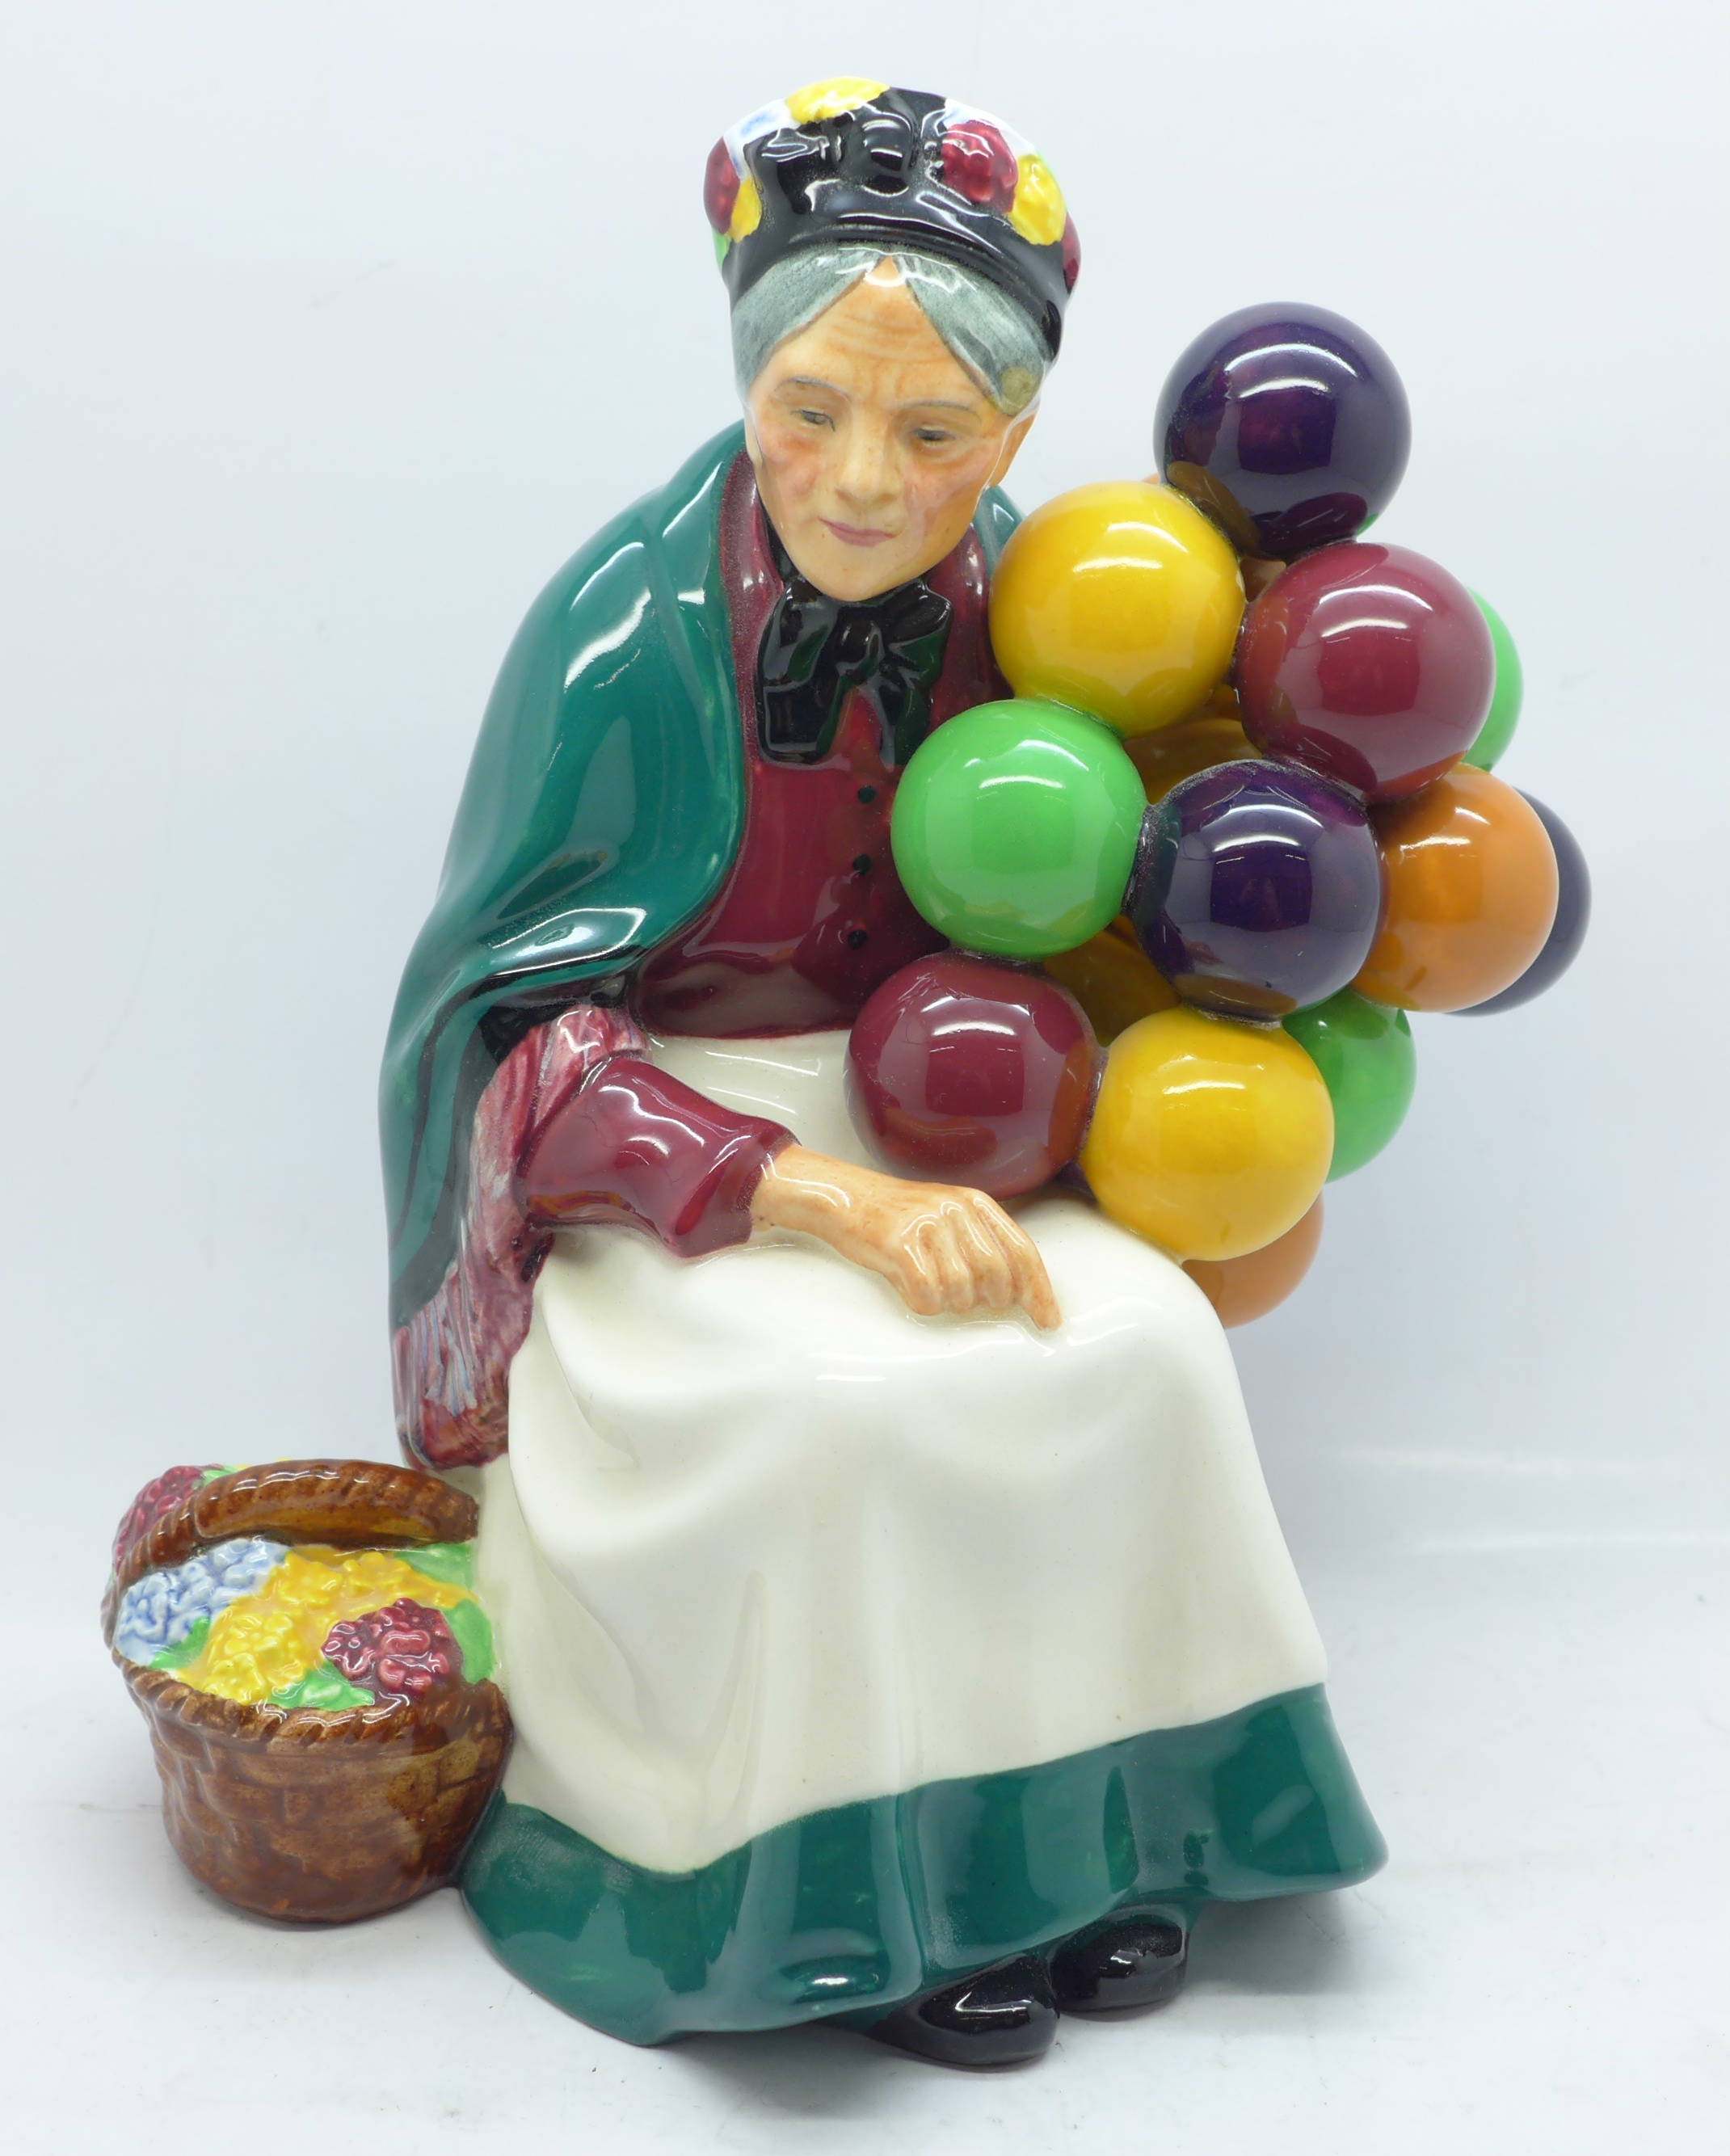 A Royal Doulton figure, The Old Balloon Seller